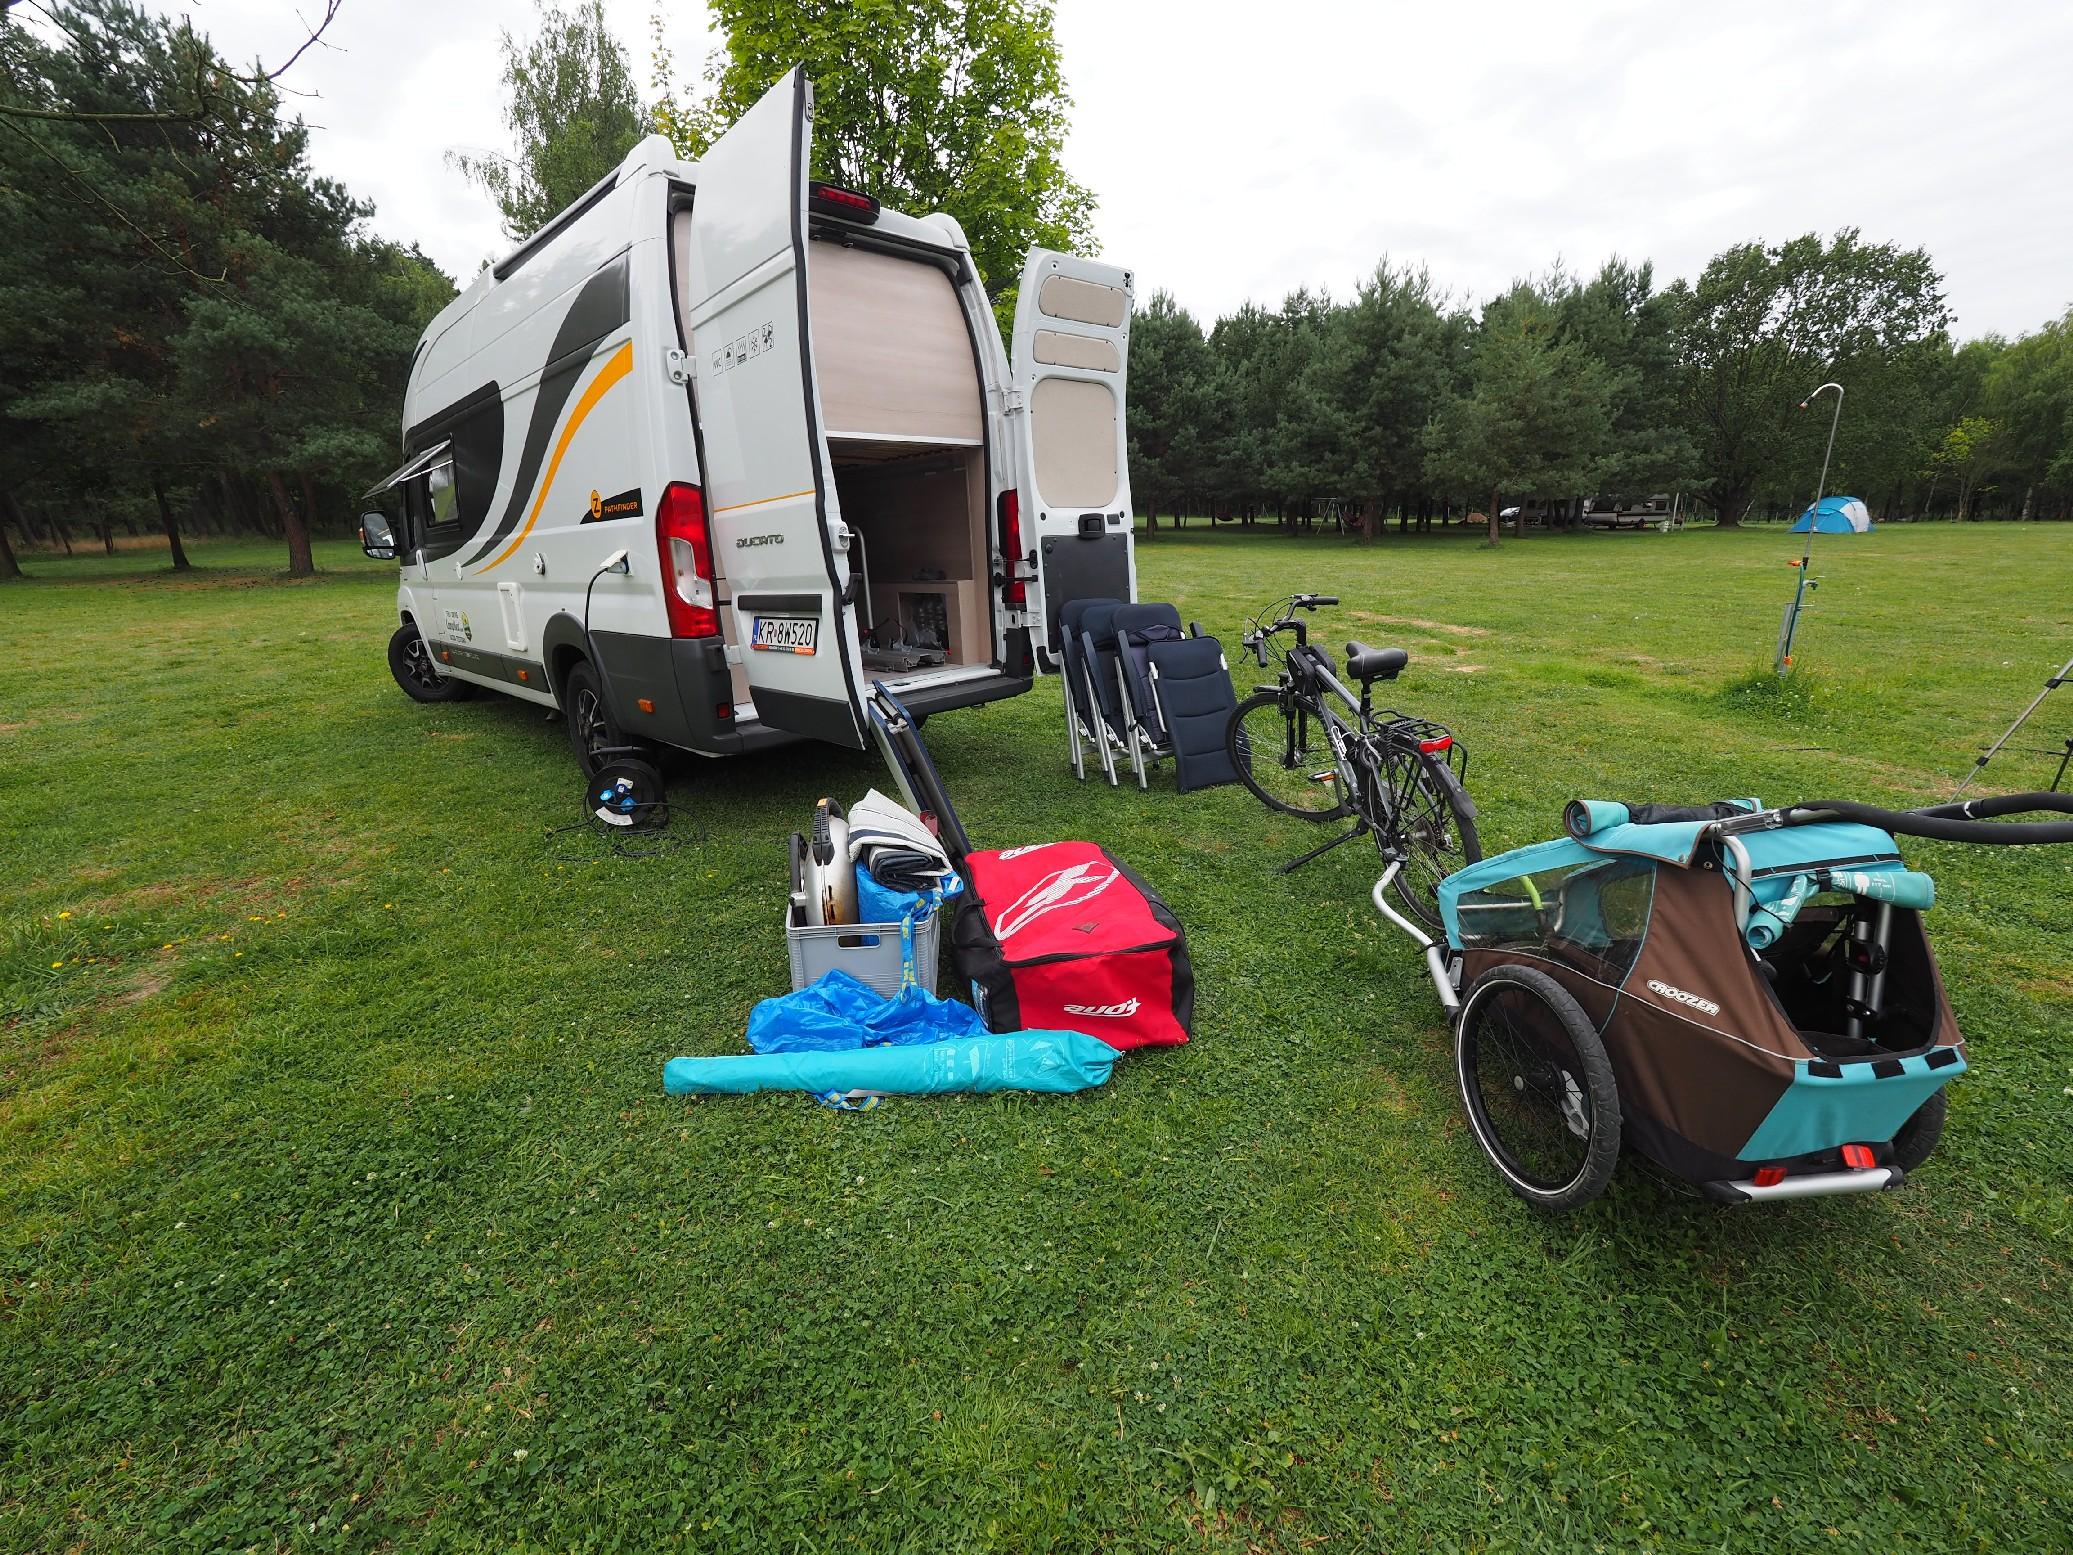 Kamper rowerowy czyli Globe-Traveller Pathfinder Z - Test CampRest – zdjęcie 4